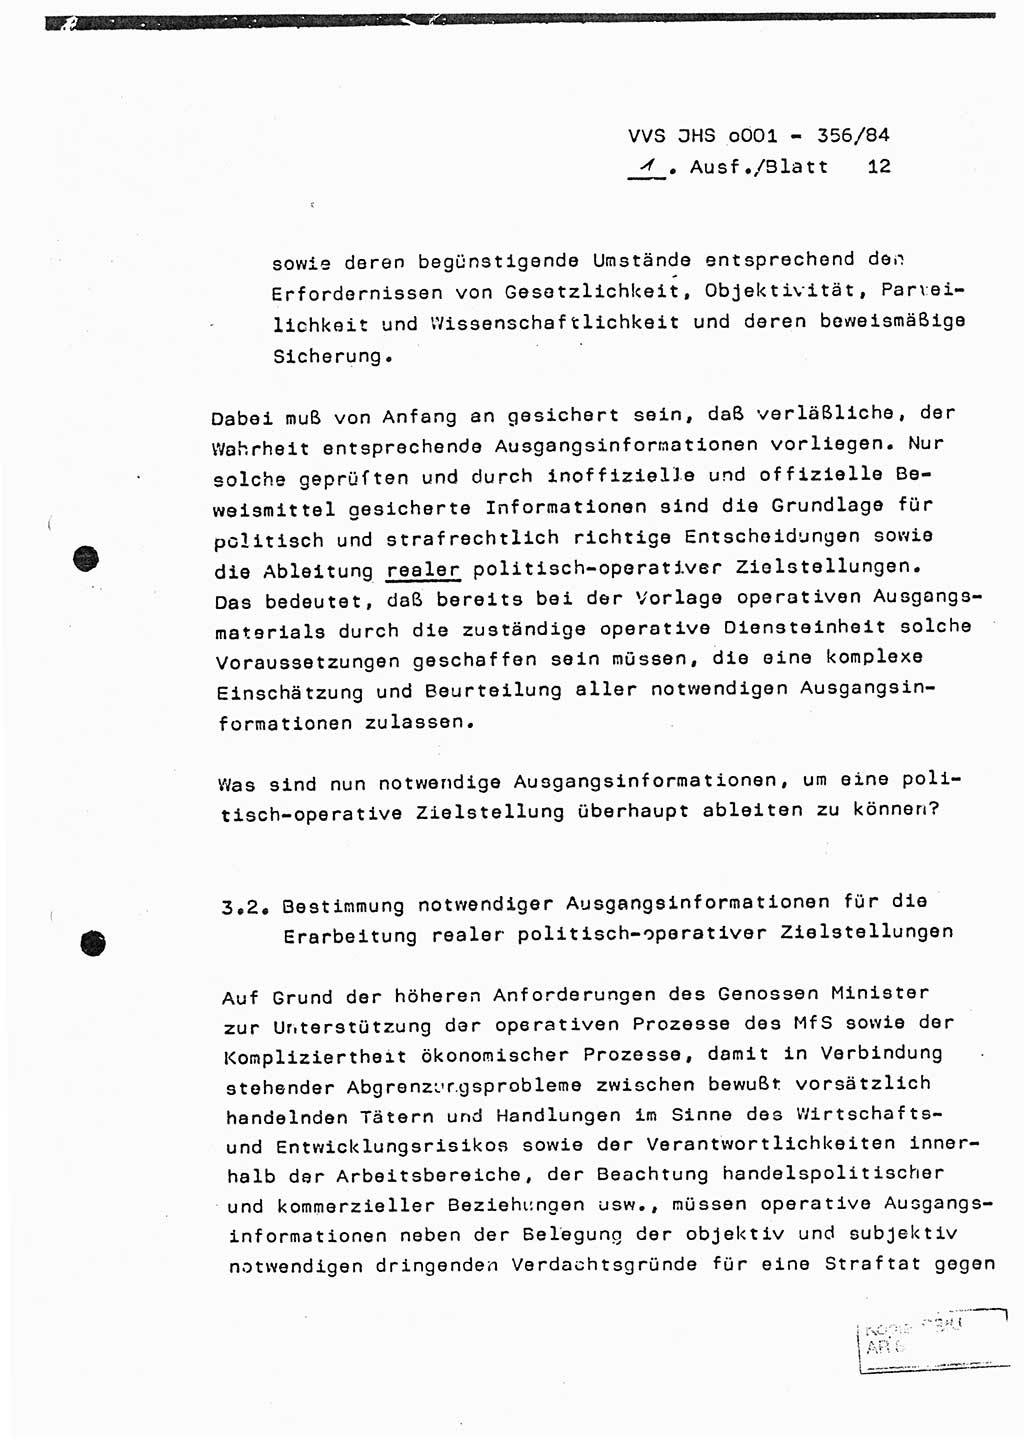 Diplomarbeit, Major Lutz Rahaus (HA Ⅸ/3), Ministerium für Staatssicherheit (MfS) [Deutsche Demokratische Republik (DDR)], Juristische Hochschule (JHS), Vertrauliche Verschlußsache (VVS) o001-356/84, Potsdam 1984, Seite 12 (Dipl.-Arb. MfS DDR JHS VVS o001-356/84 1984, S. 12)